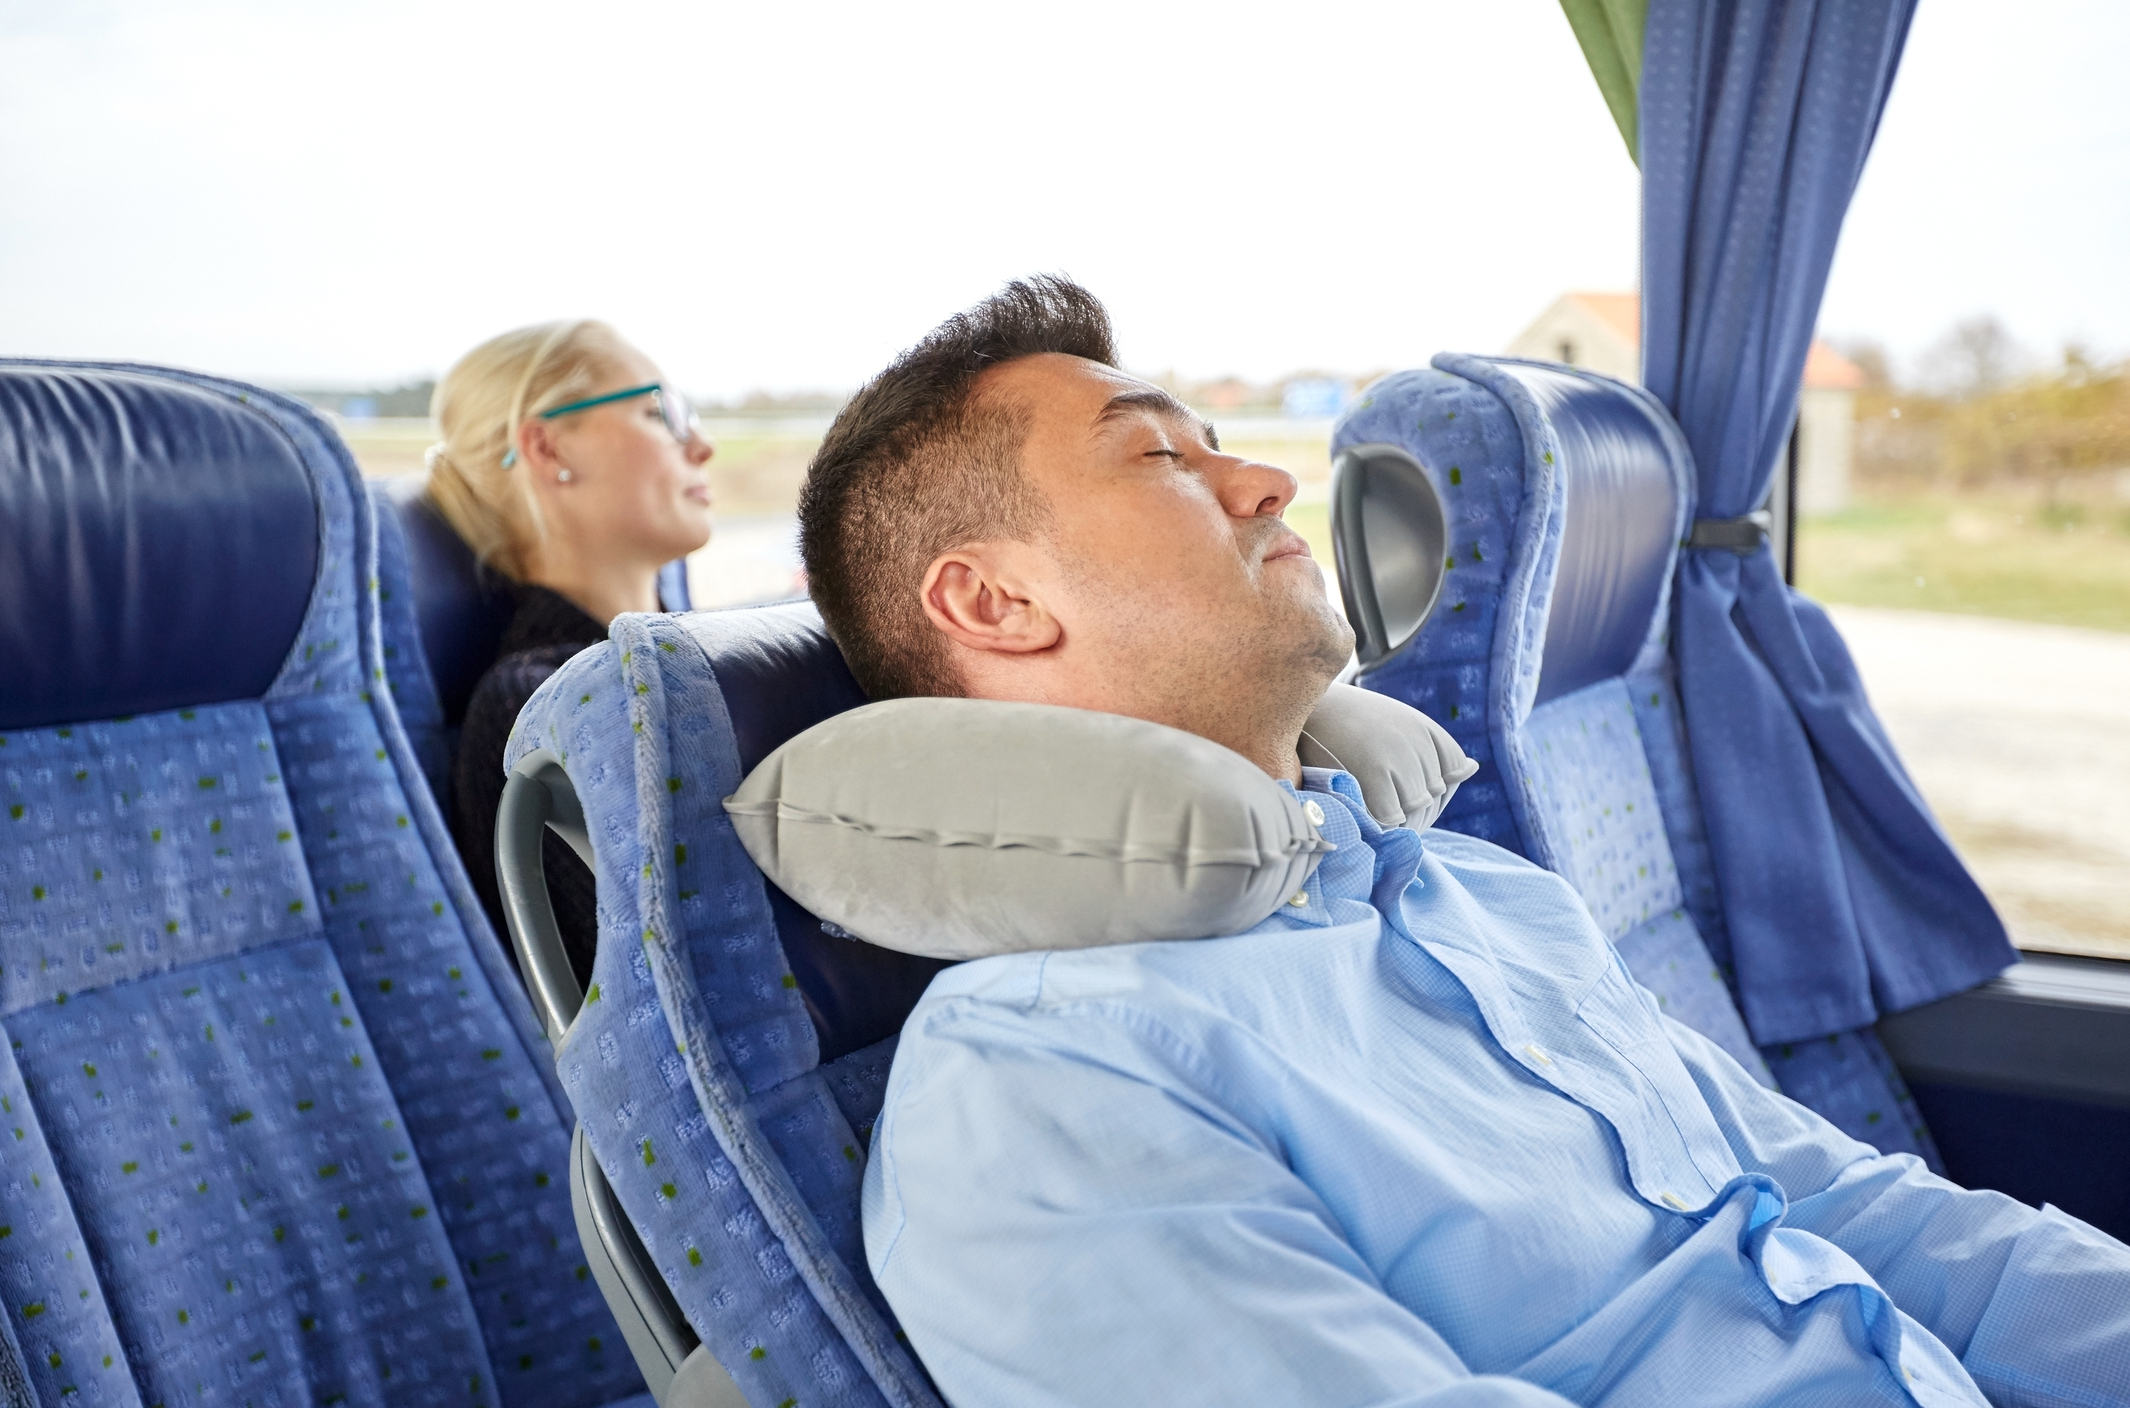 Dva cestující, spící v autobuse, muž má polštář. Sedadla, venku přes okna vidět stromy